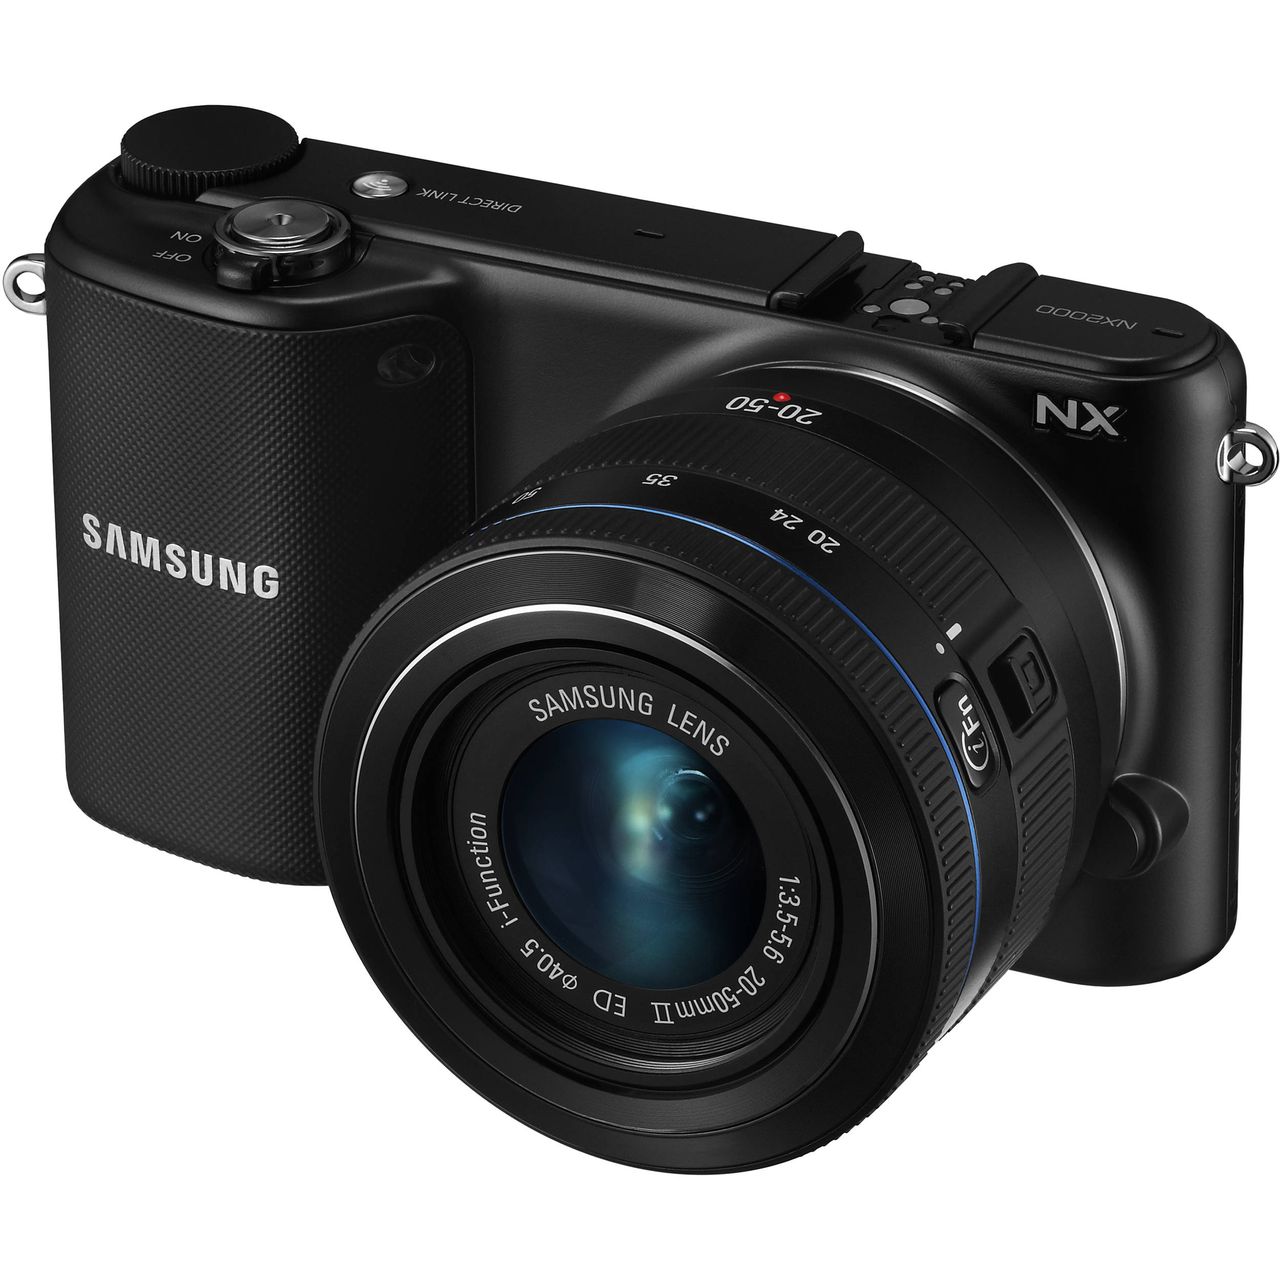 Samsung NX2000 nadaje się do fotografii amatorskiej i znajduje się na całkiem rozsądnej półce cenowej